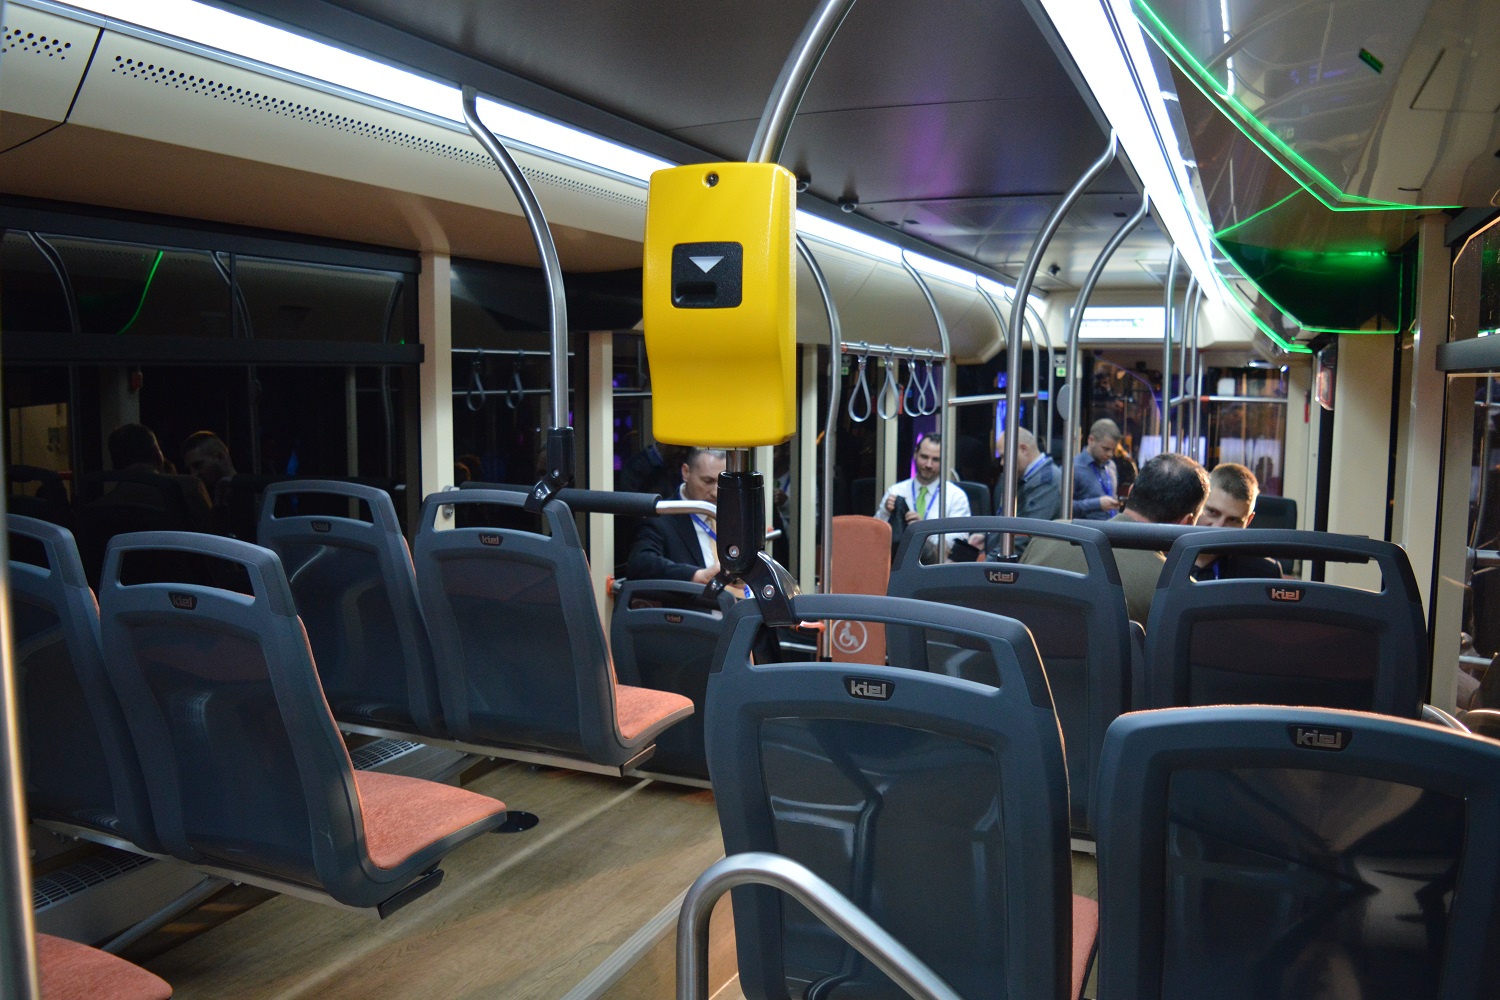 A reformáció előtt tiszteleg az új magyar autóbusz 8